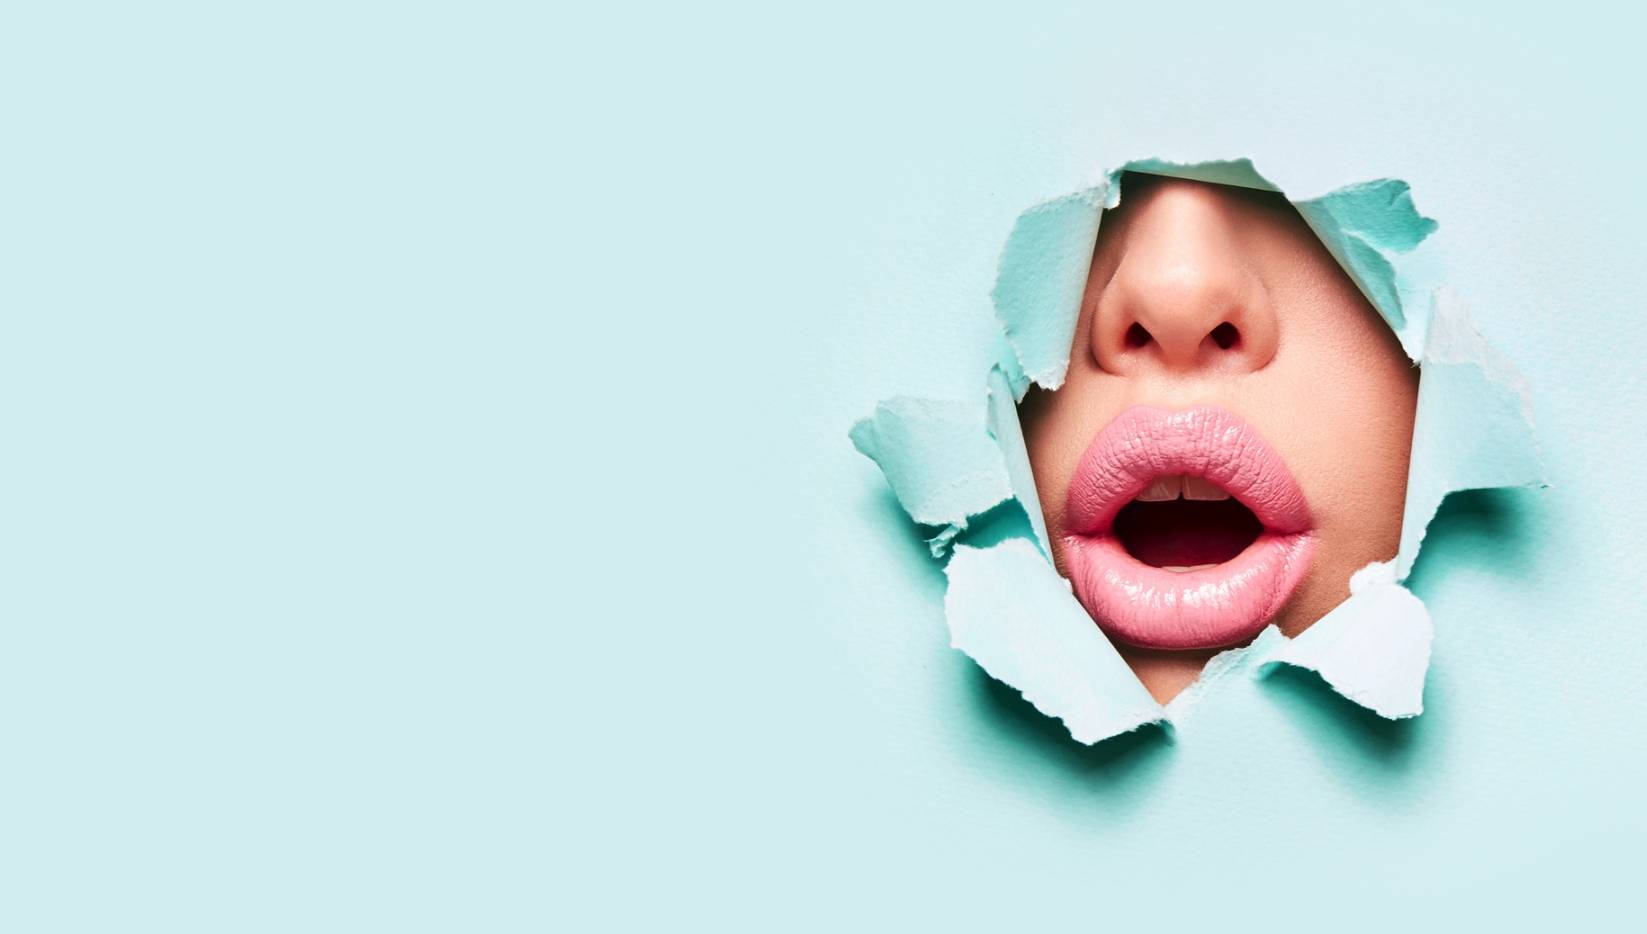 Opryszczka na ustach - czym jest, jak można się nią zarazić i jak z nią walczyć? Zdjęcie studyjne - kobieta o pełnych różowych ustach przebija się twarzą przez błękitny papier robiący za tło.